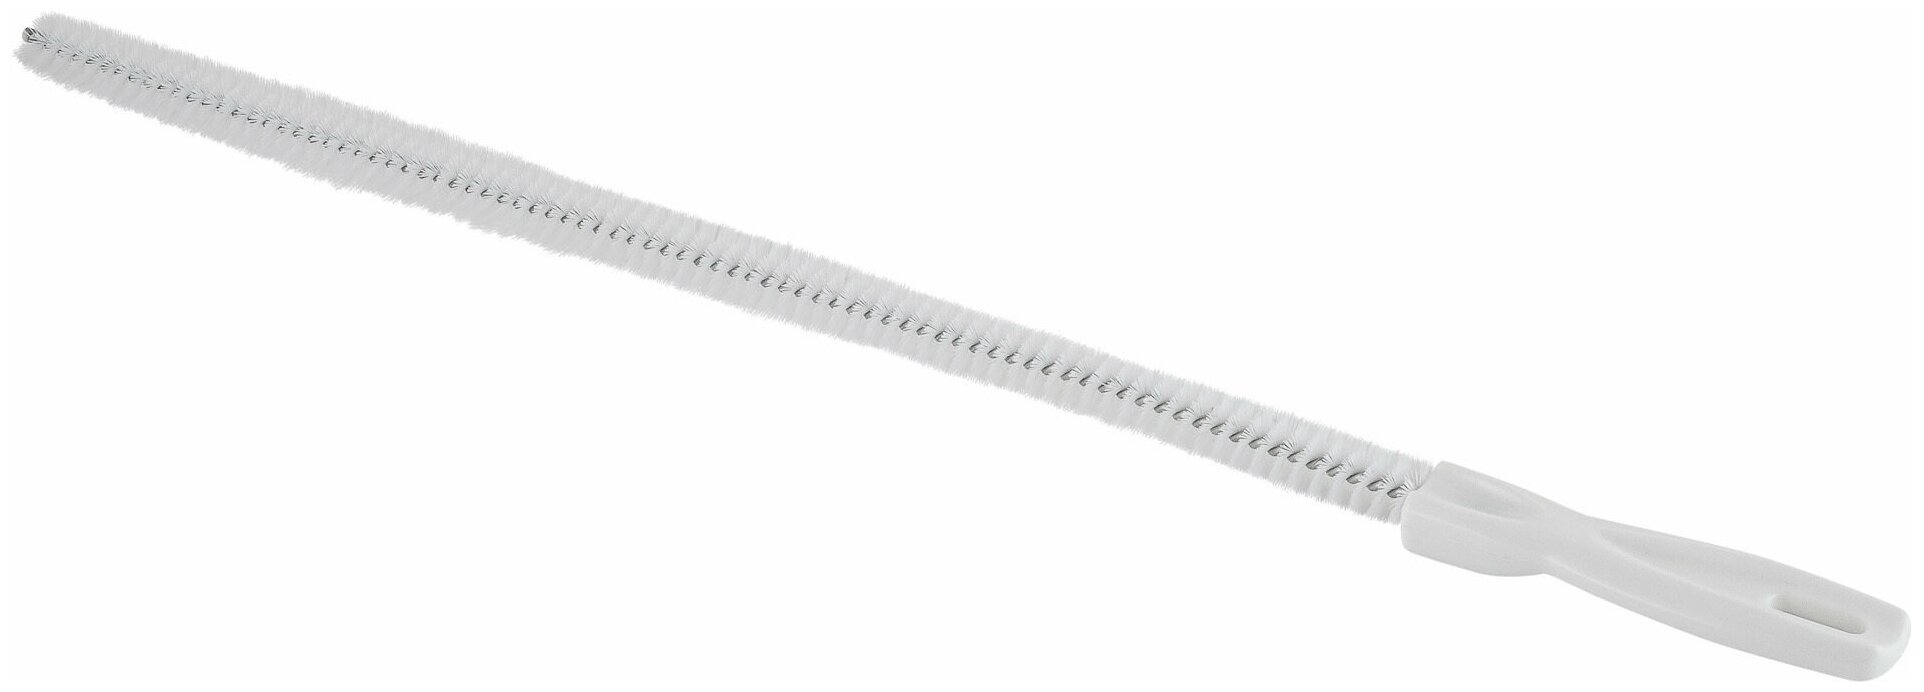 Ершик-щетка для прочистки слива раковины / Щетка для прочистки раковины, длина 44 см